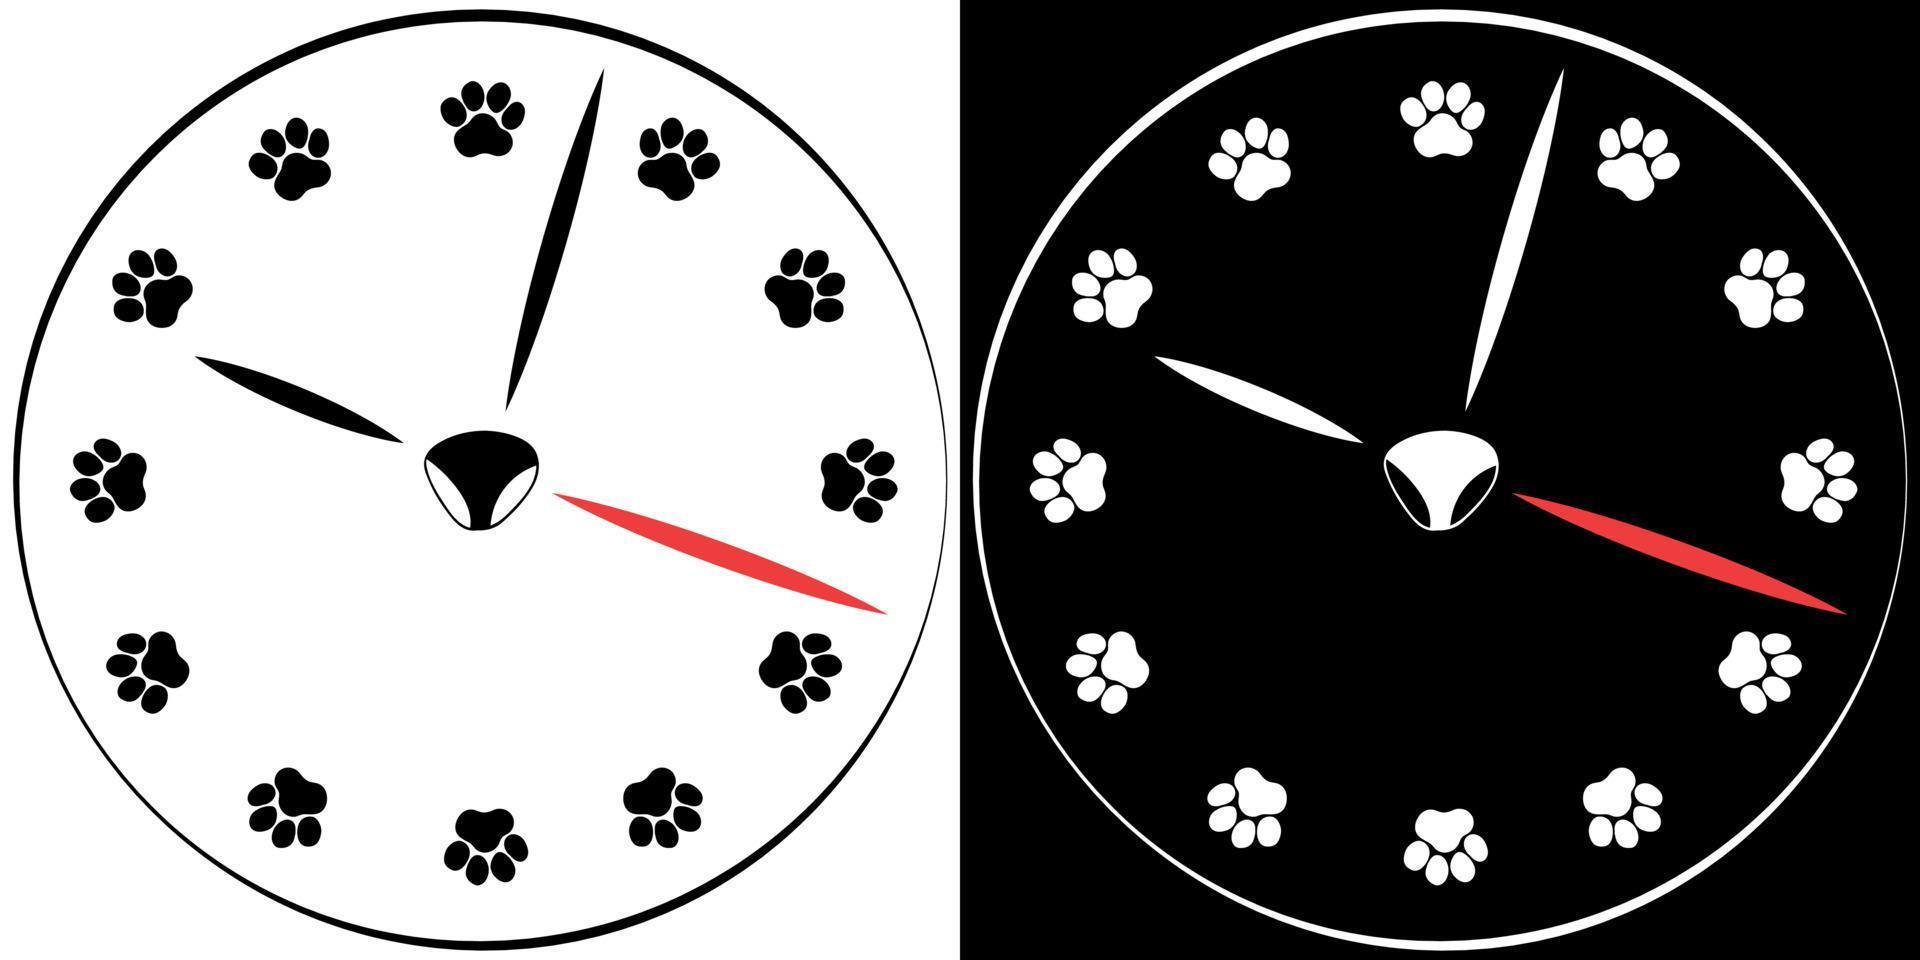 klok illustratie met poot prints in plaats daarvan van nummers. wijzerplaat gemaakt van huisdier poot afdrukken. zwart en wit illustratie. vector